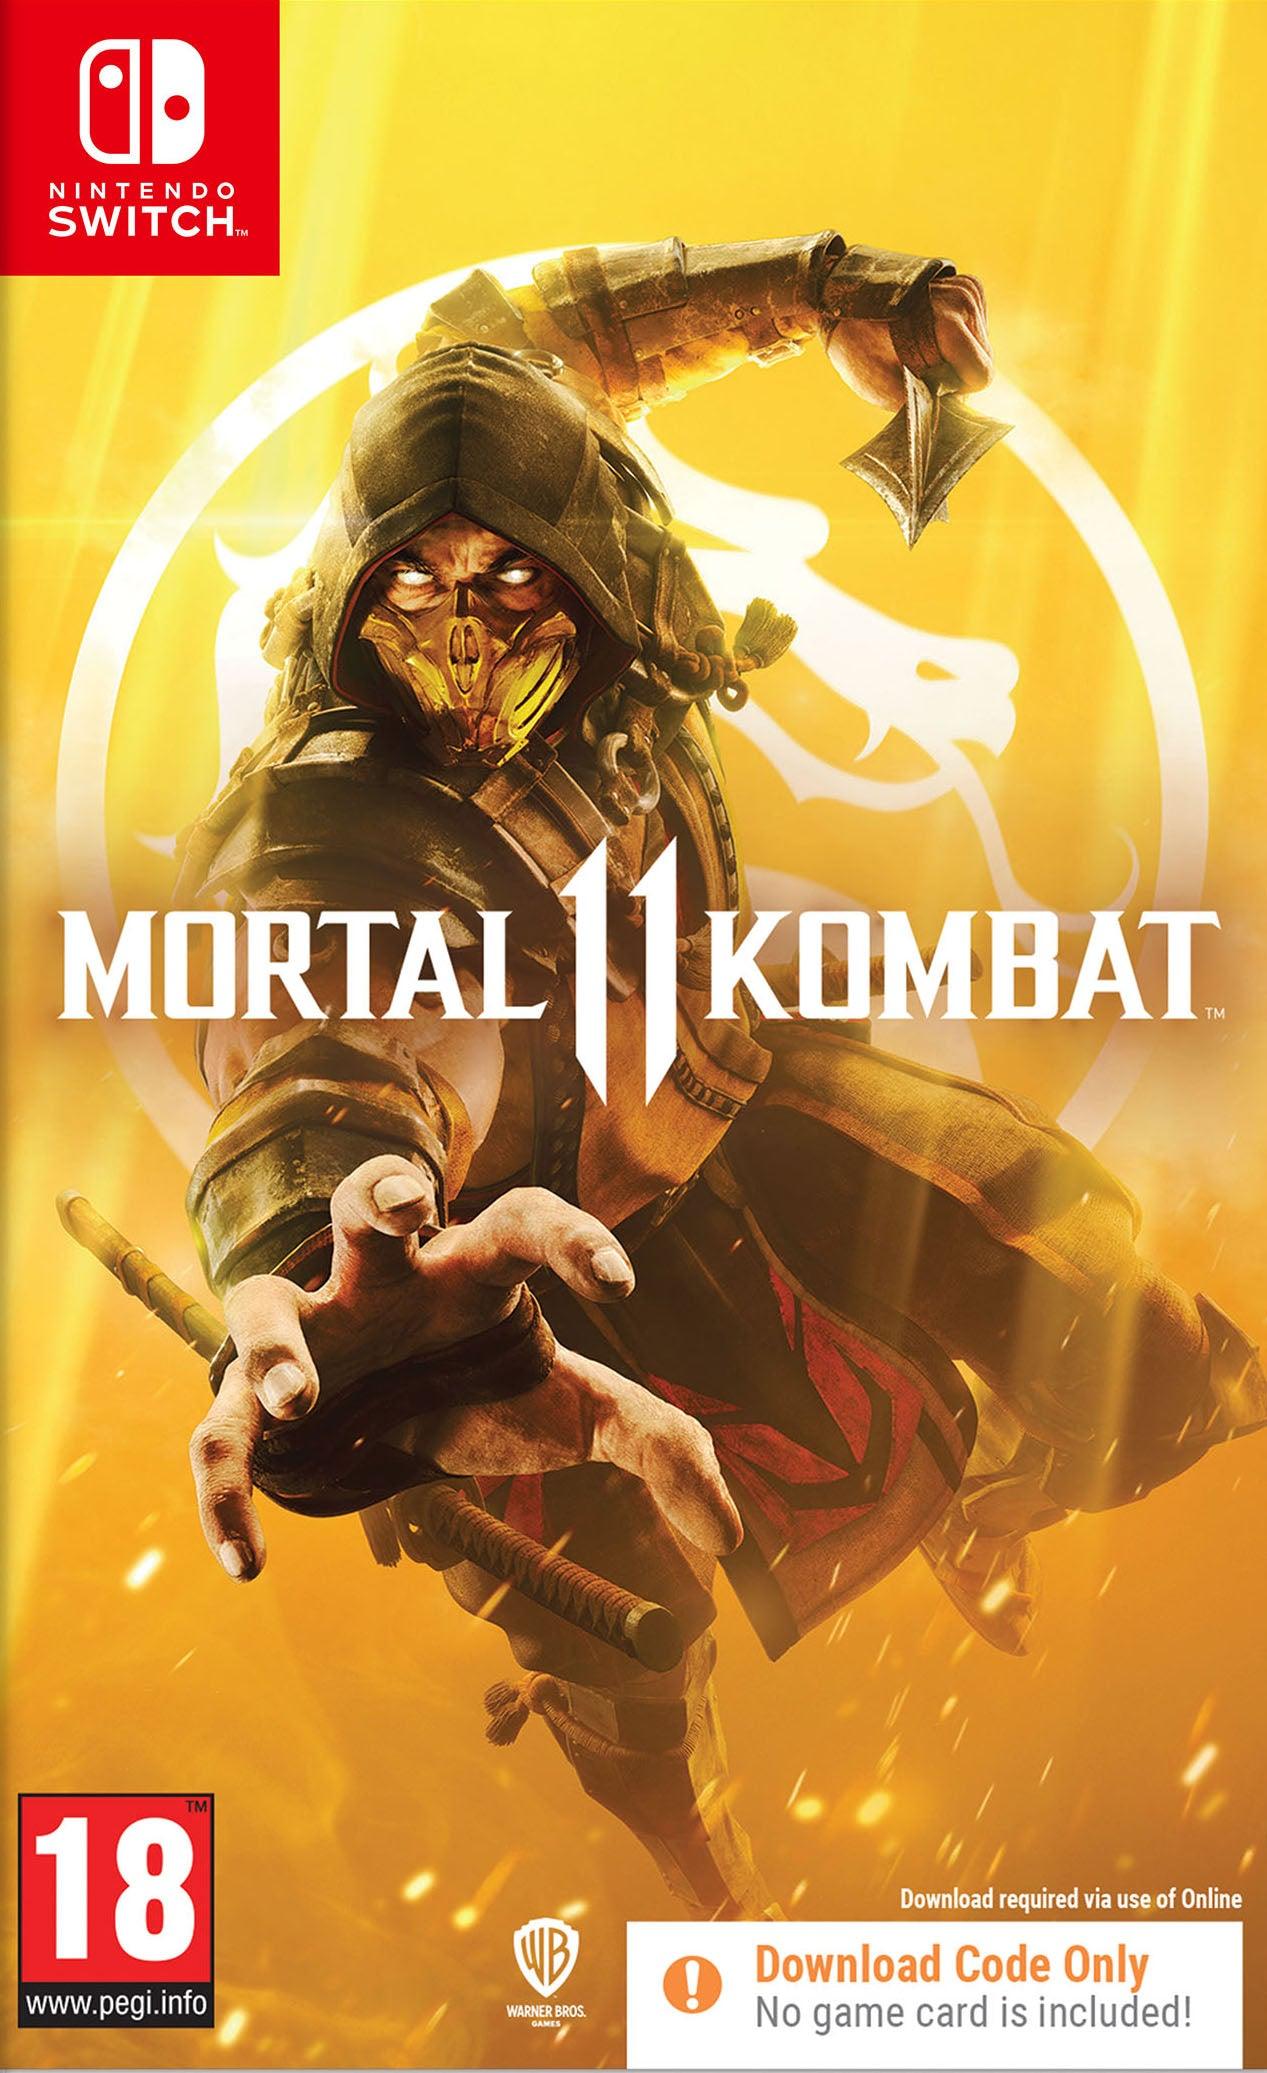 Mortal Kombat 11 Cib - Want a New Gadget